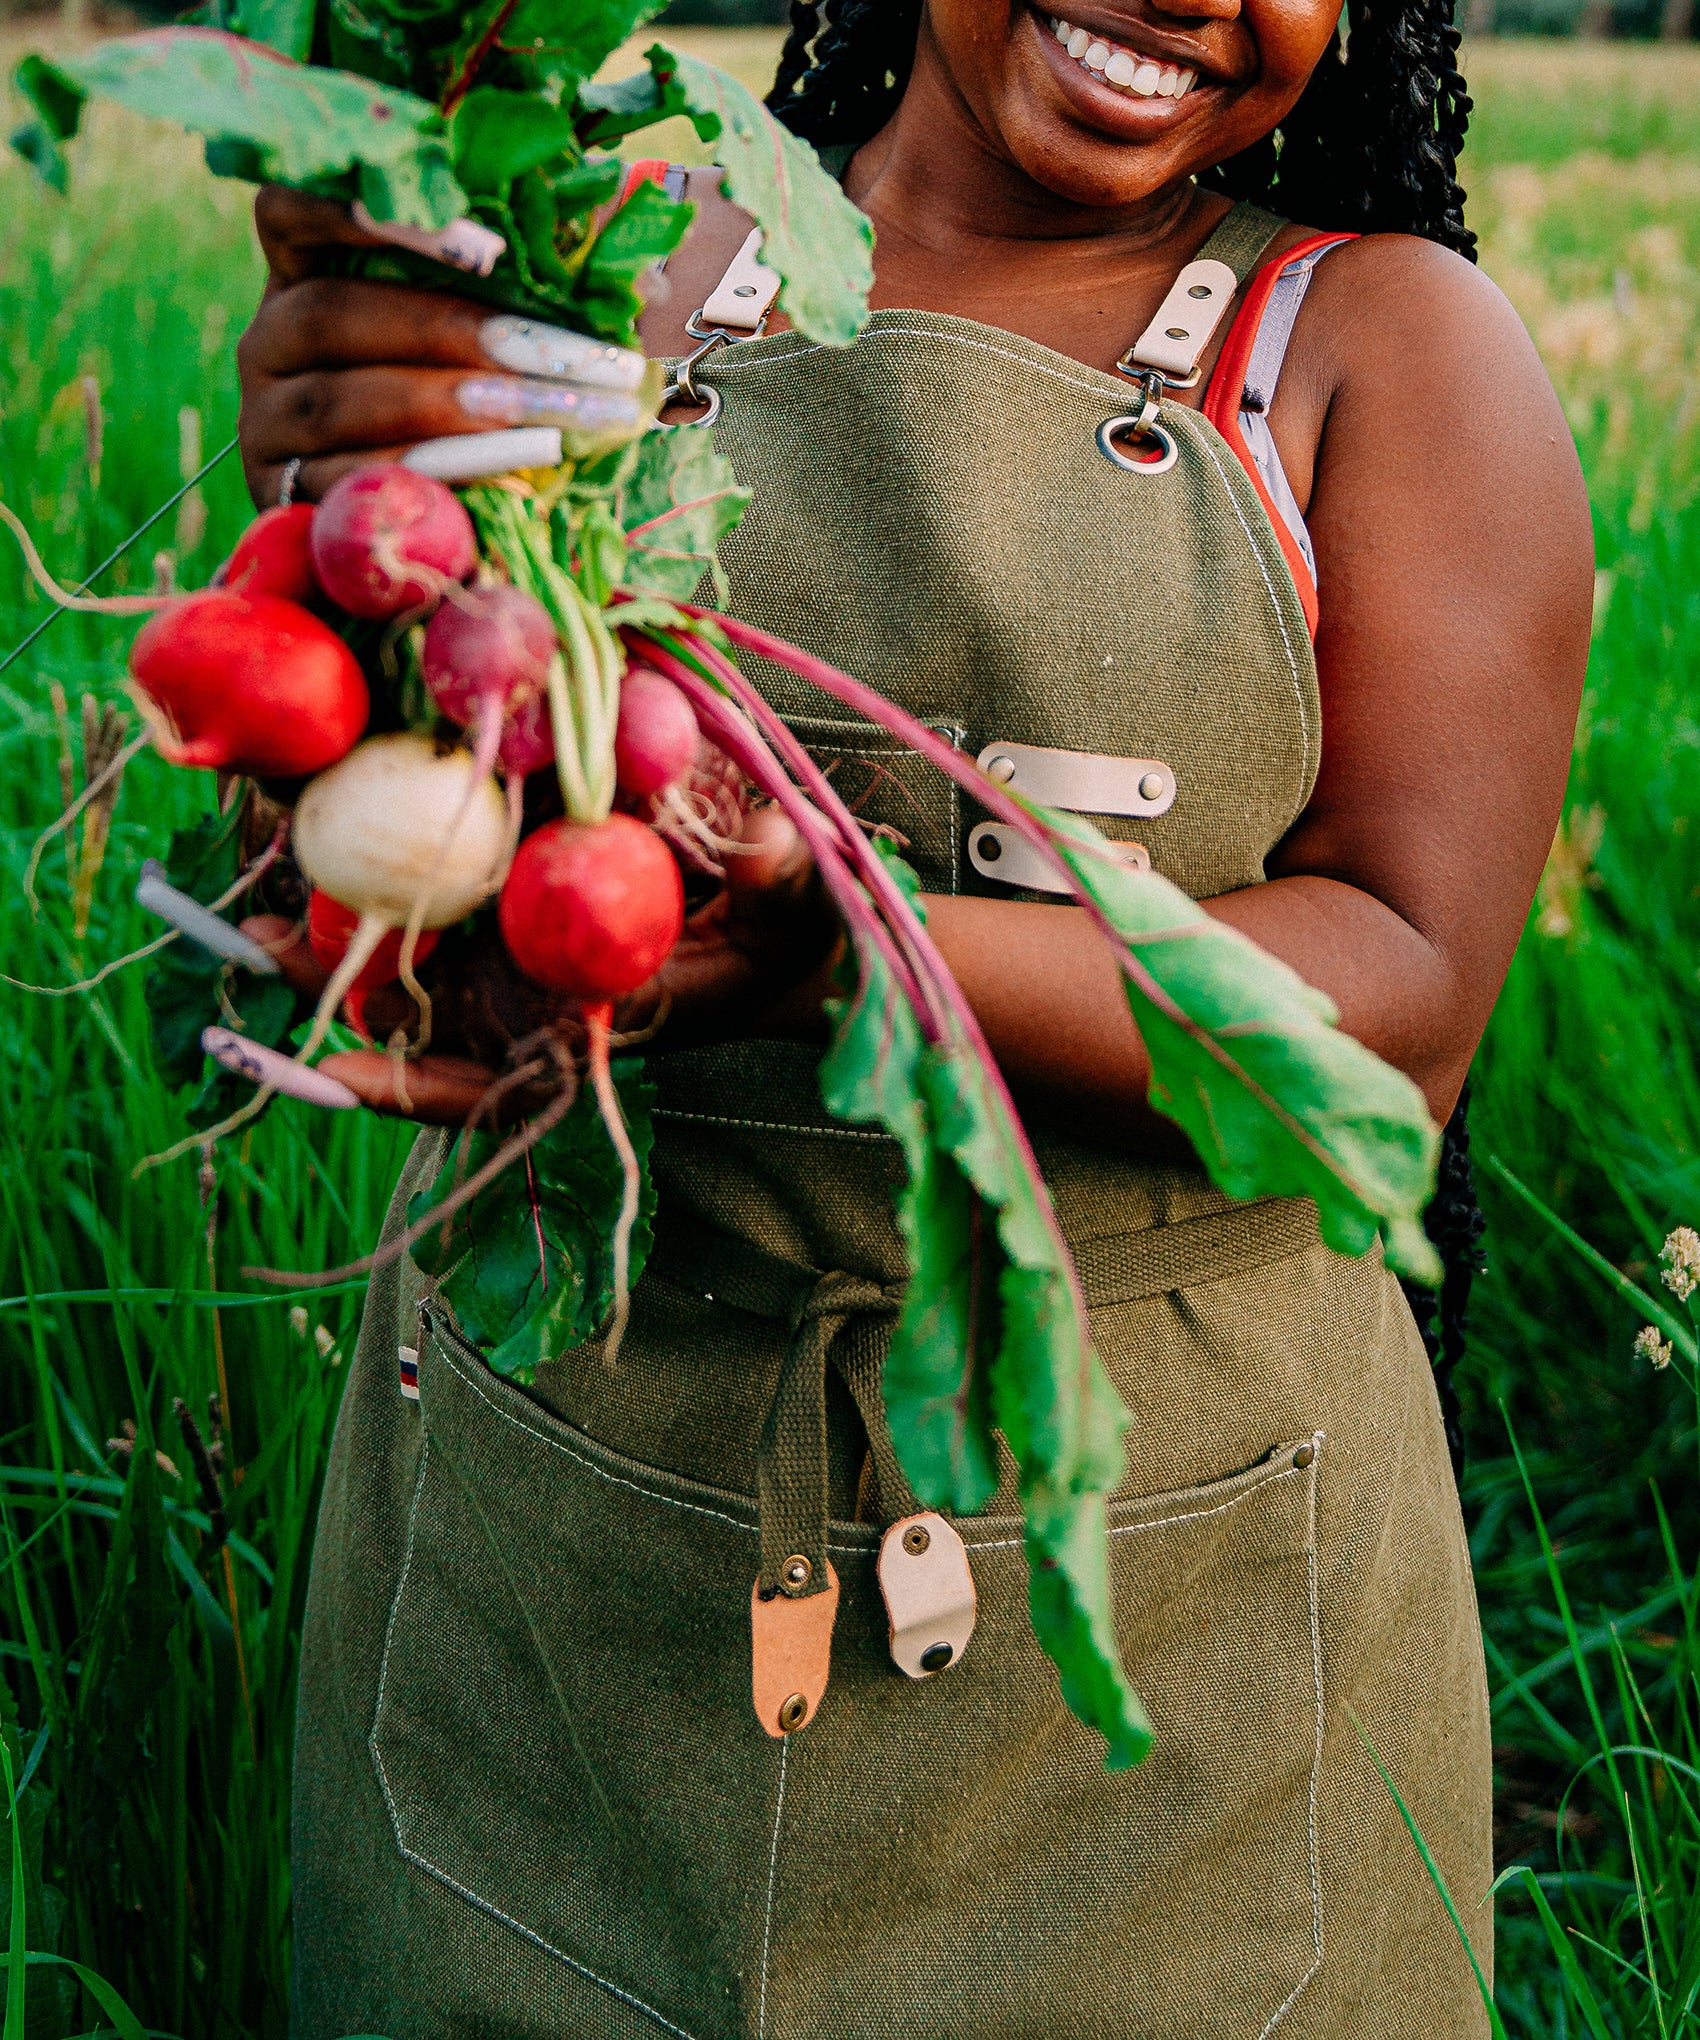 Black Women Farmers In America